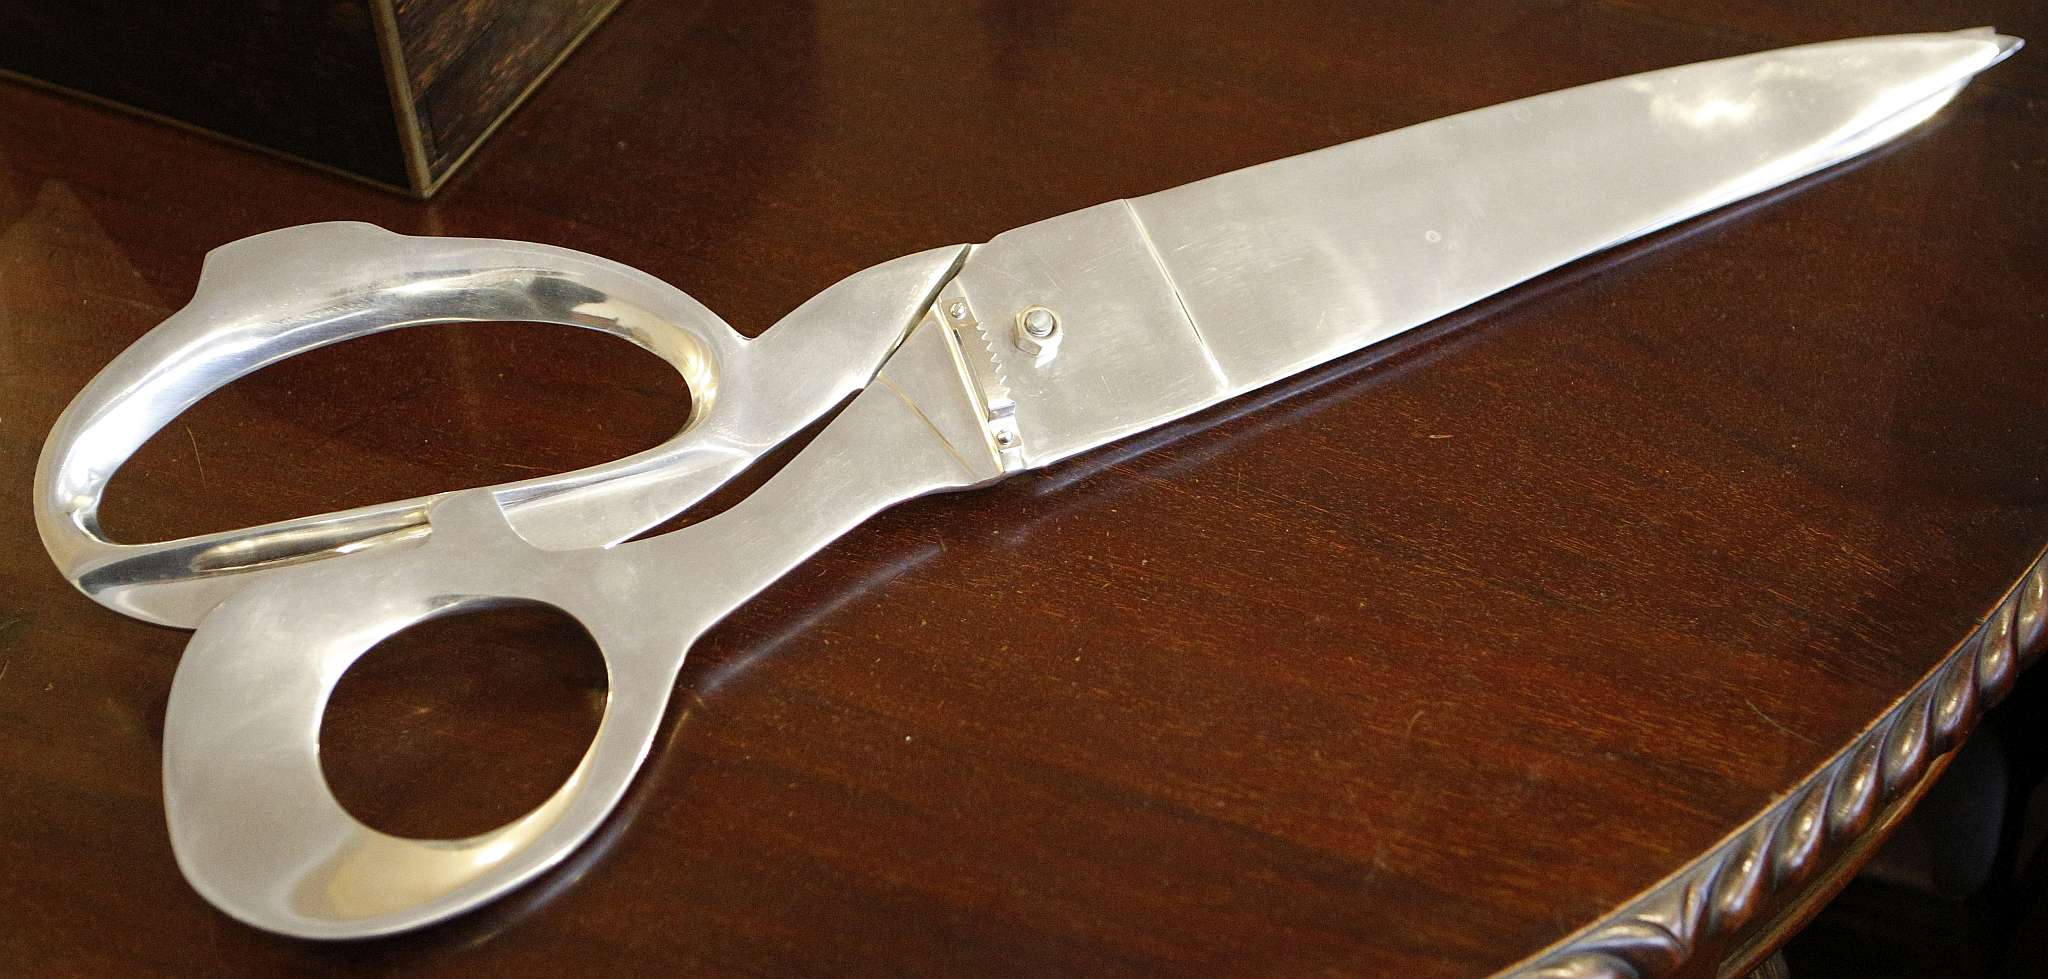 Novelty oversized scissors, chrome. 77cm long.